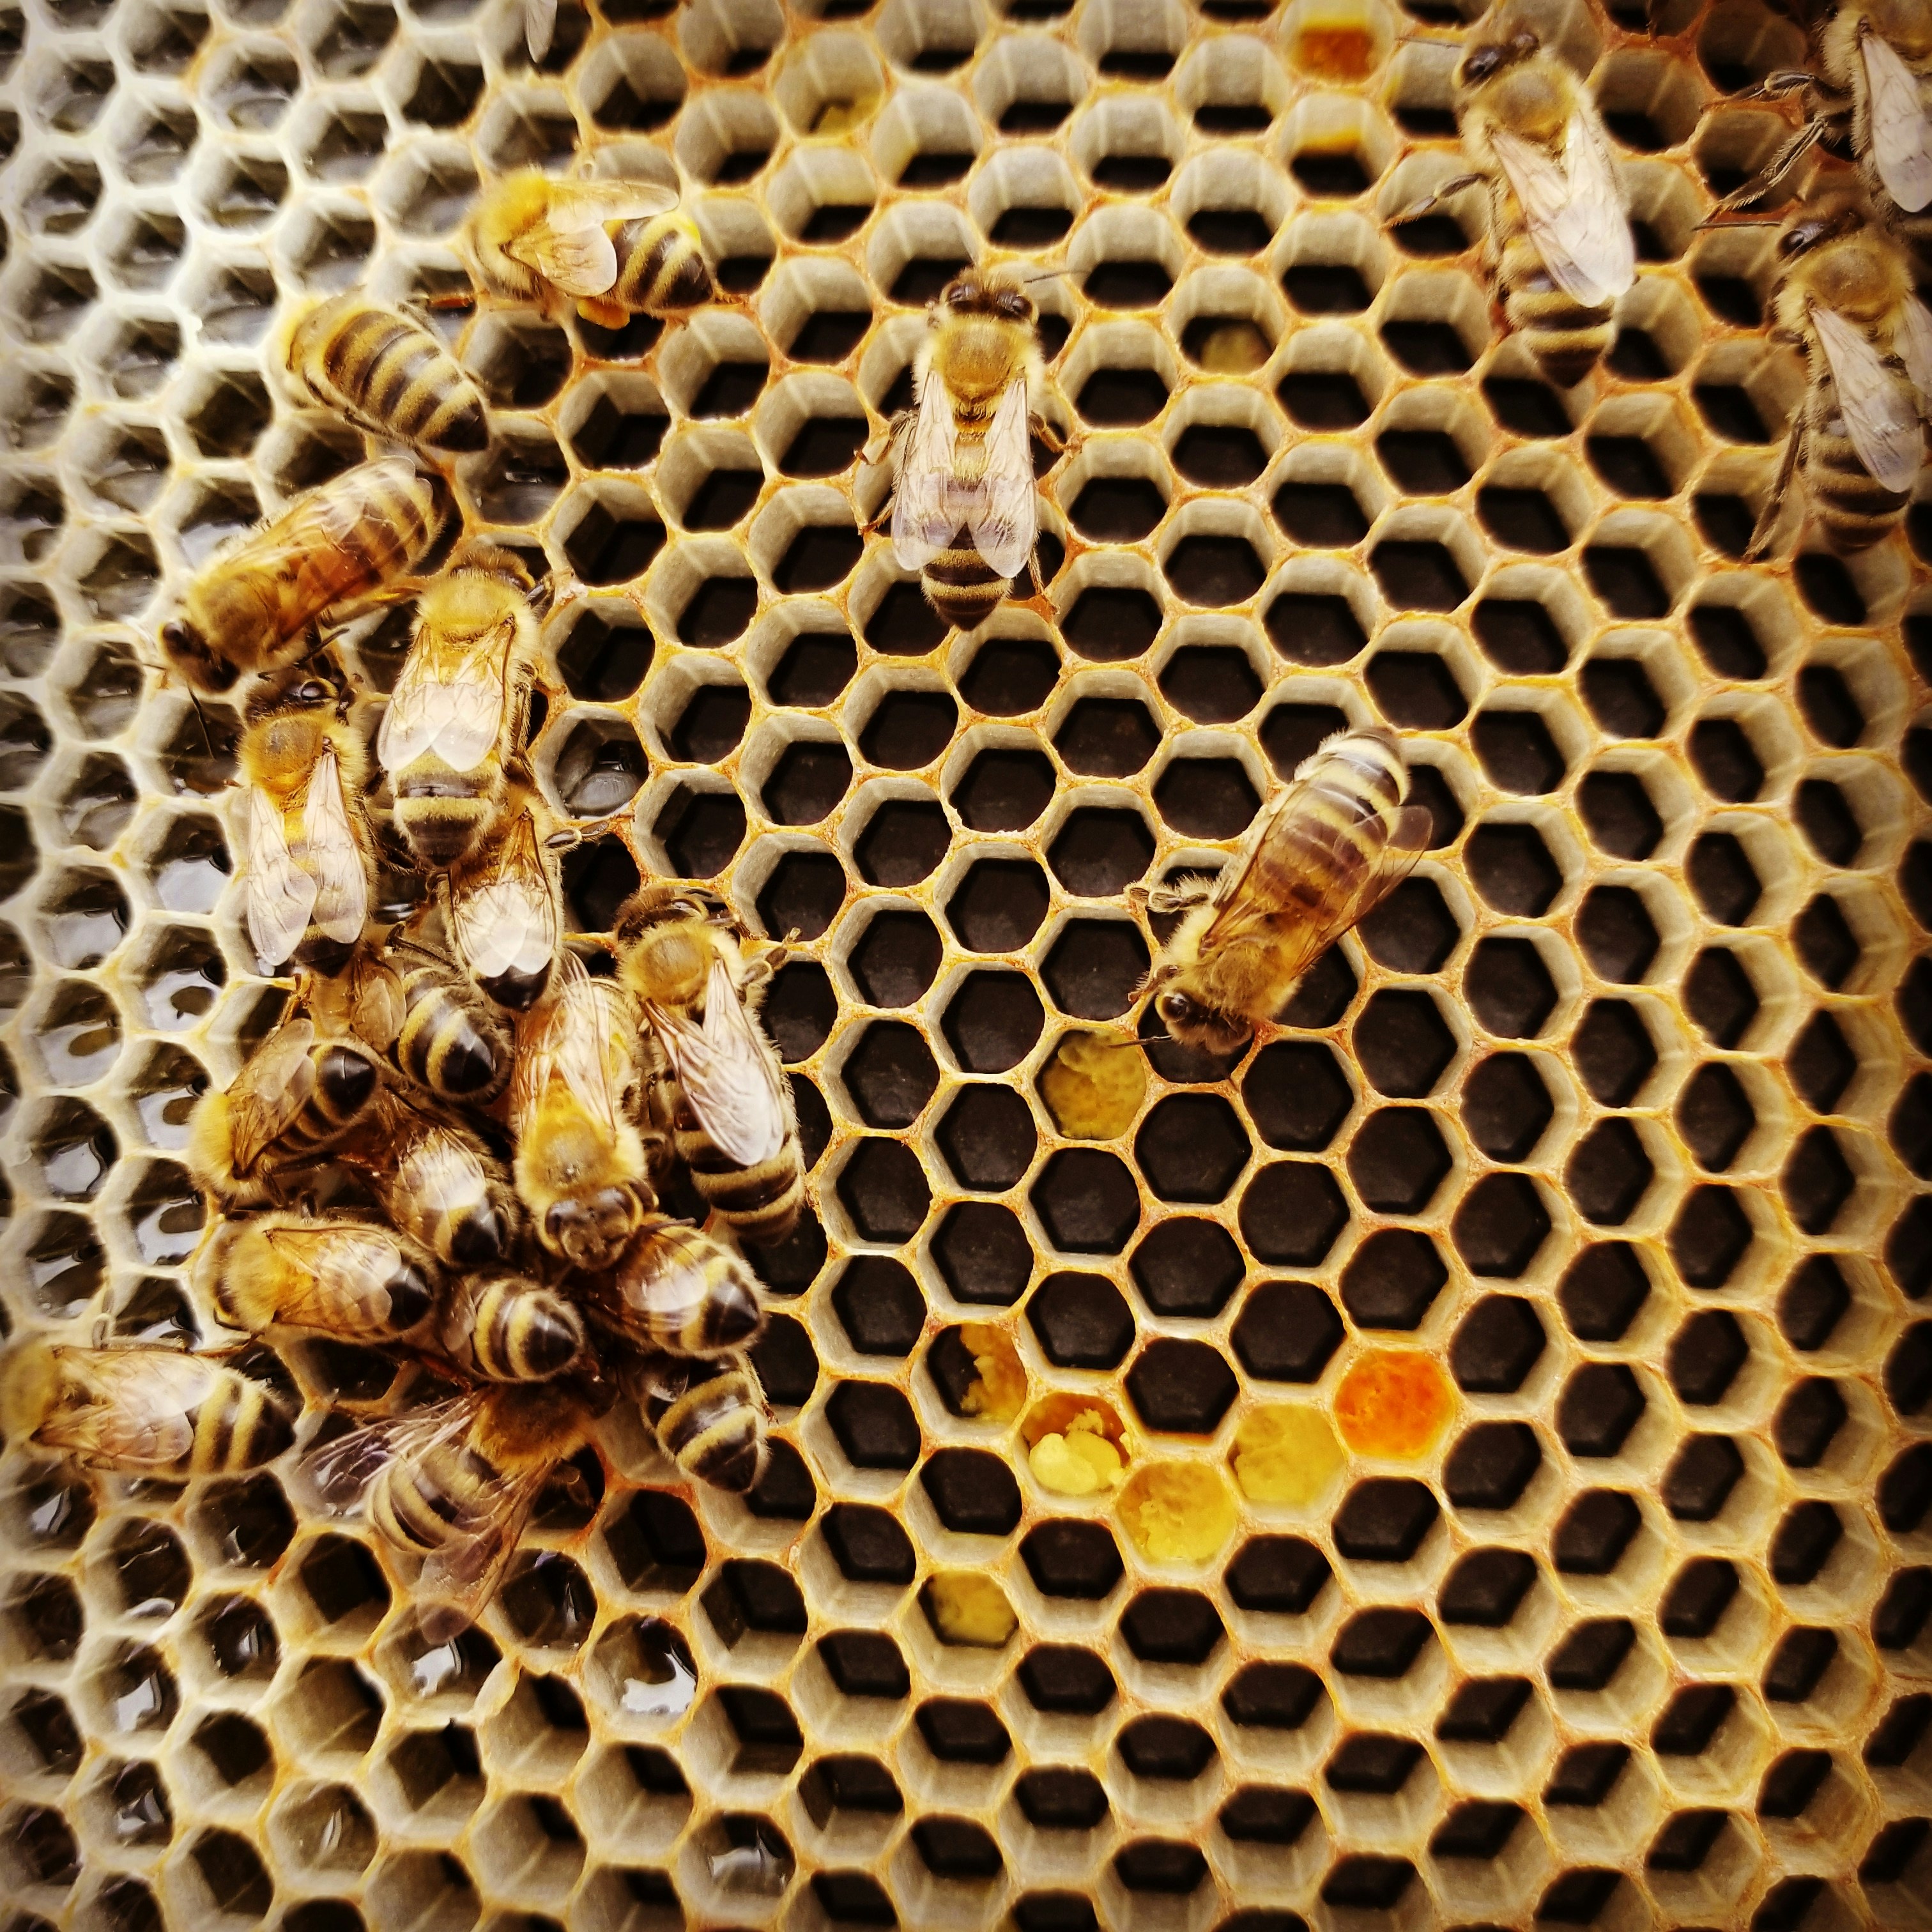 Honeybees, Harmony, & Humanity